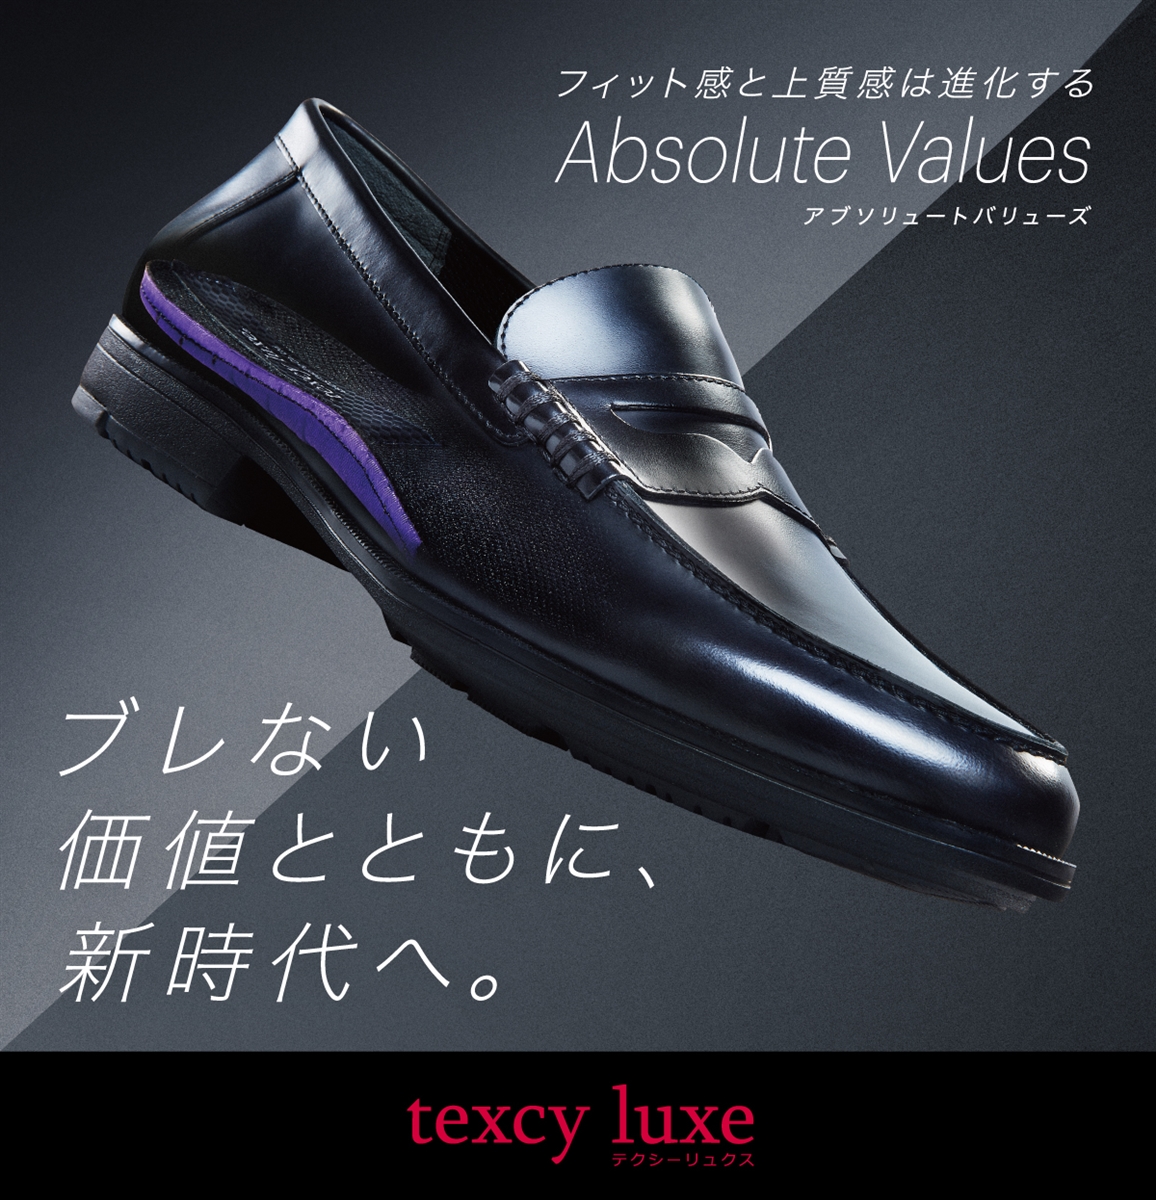 texcy luxe（テクシーリュクス）公式ブランドサイト | アシックス商事 